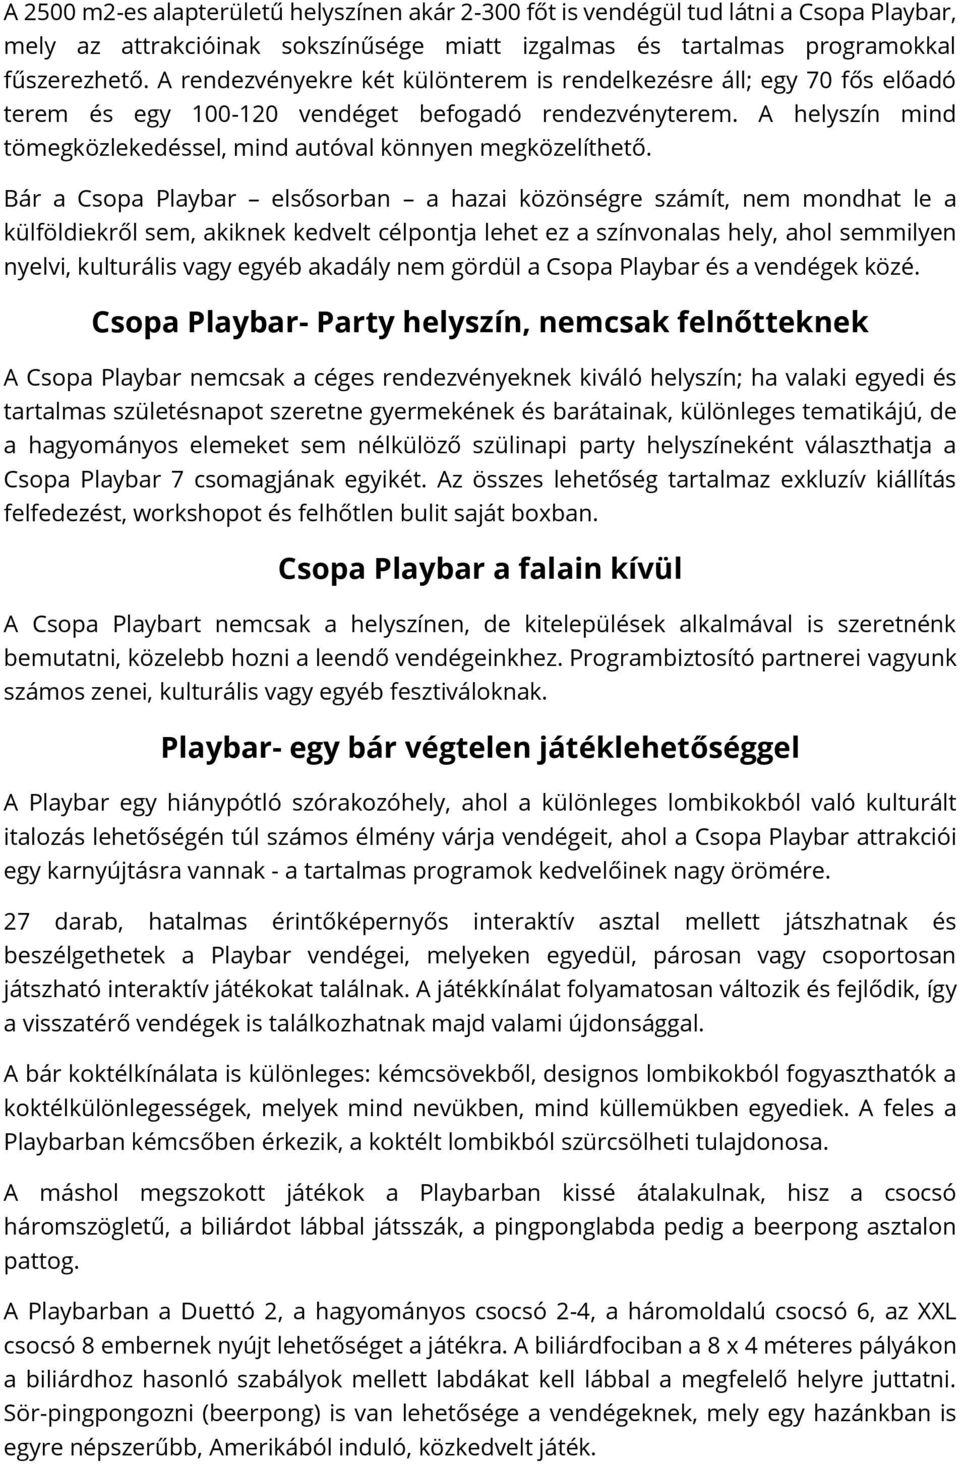 Bár a Csopa Playbar elsősorban a hazai közönségre számít, nem mondhat le a külföldiekről sem, akiknek kedvelt célpontja lehet ez a színvonalas hely, ahol semmilyen nyelvi, kulturális vagy egyéb